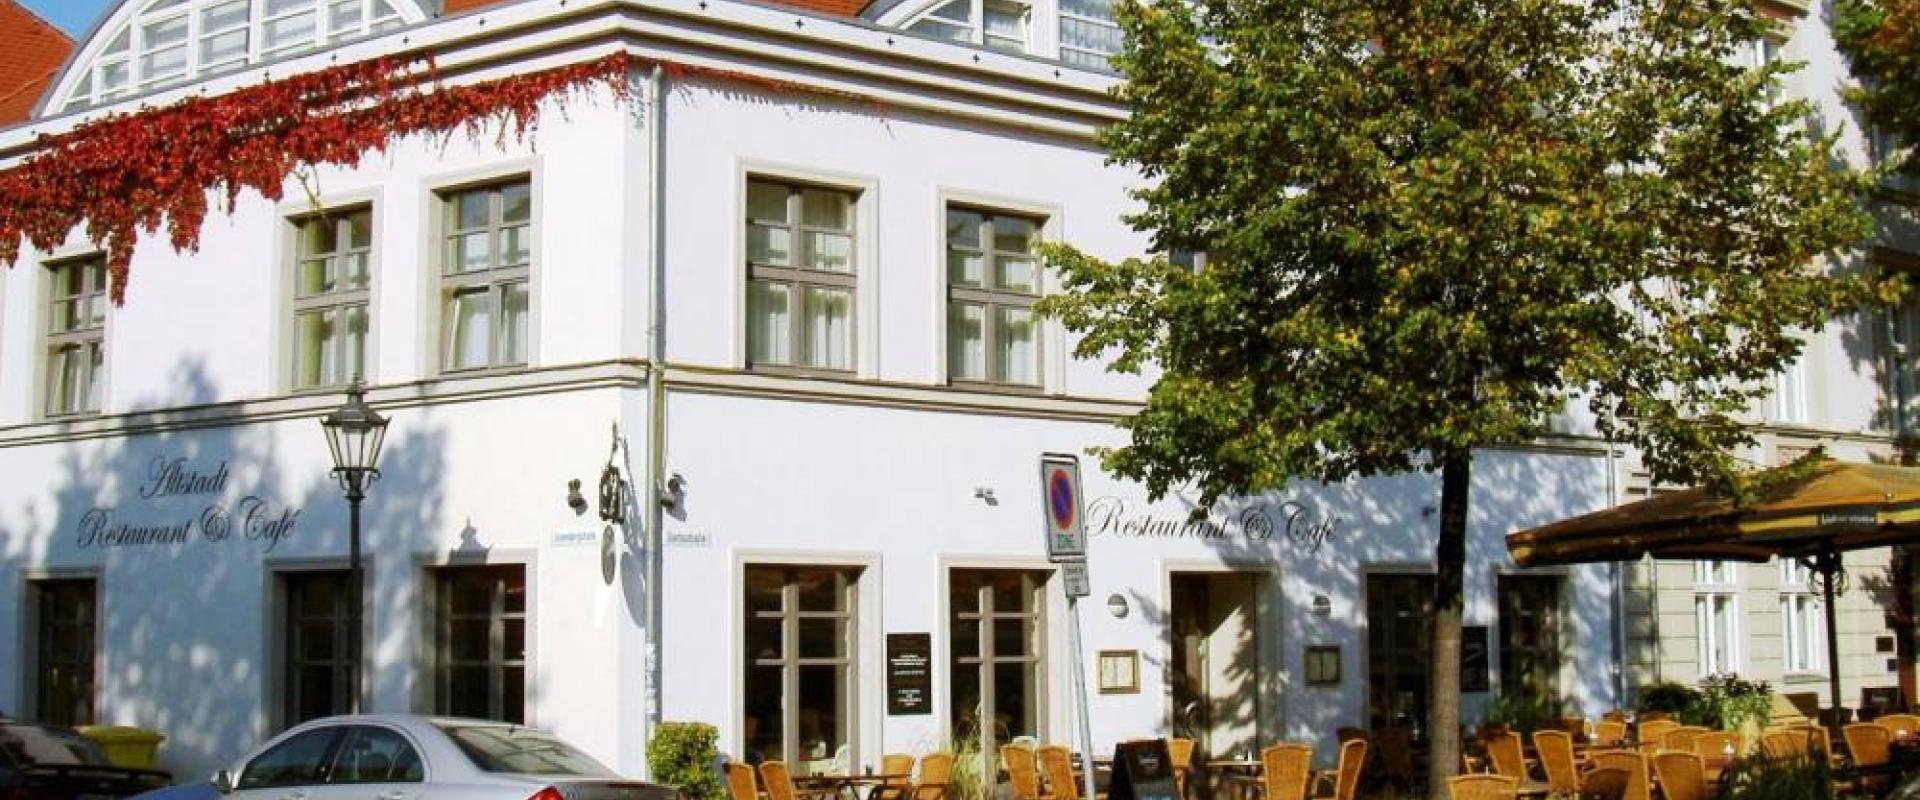 14097 Biker Hotel Altstadt Hotel in Brandenburg/Berlin.jpg